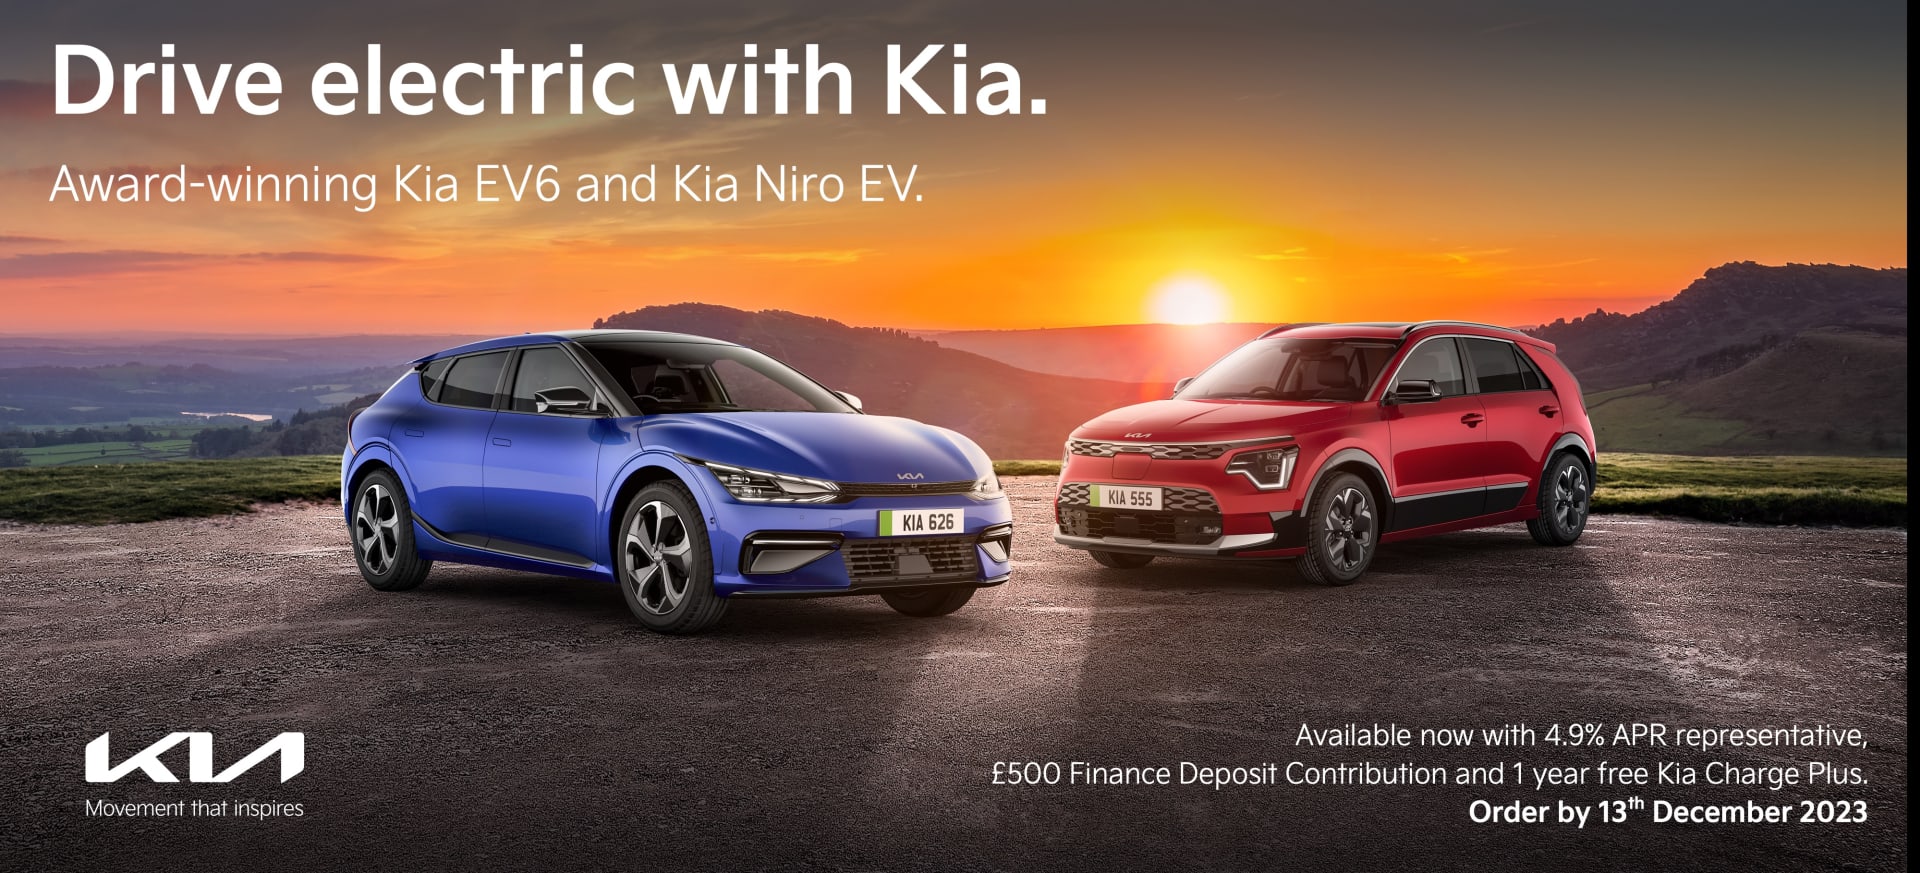 Drive electric with Kia.